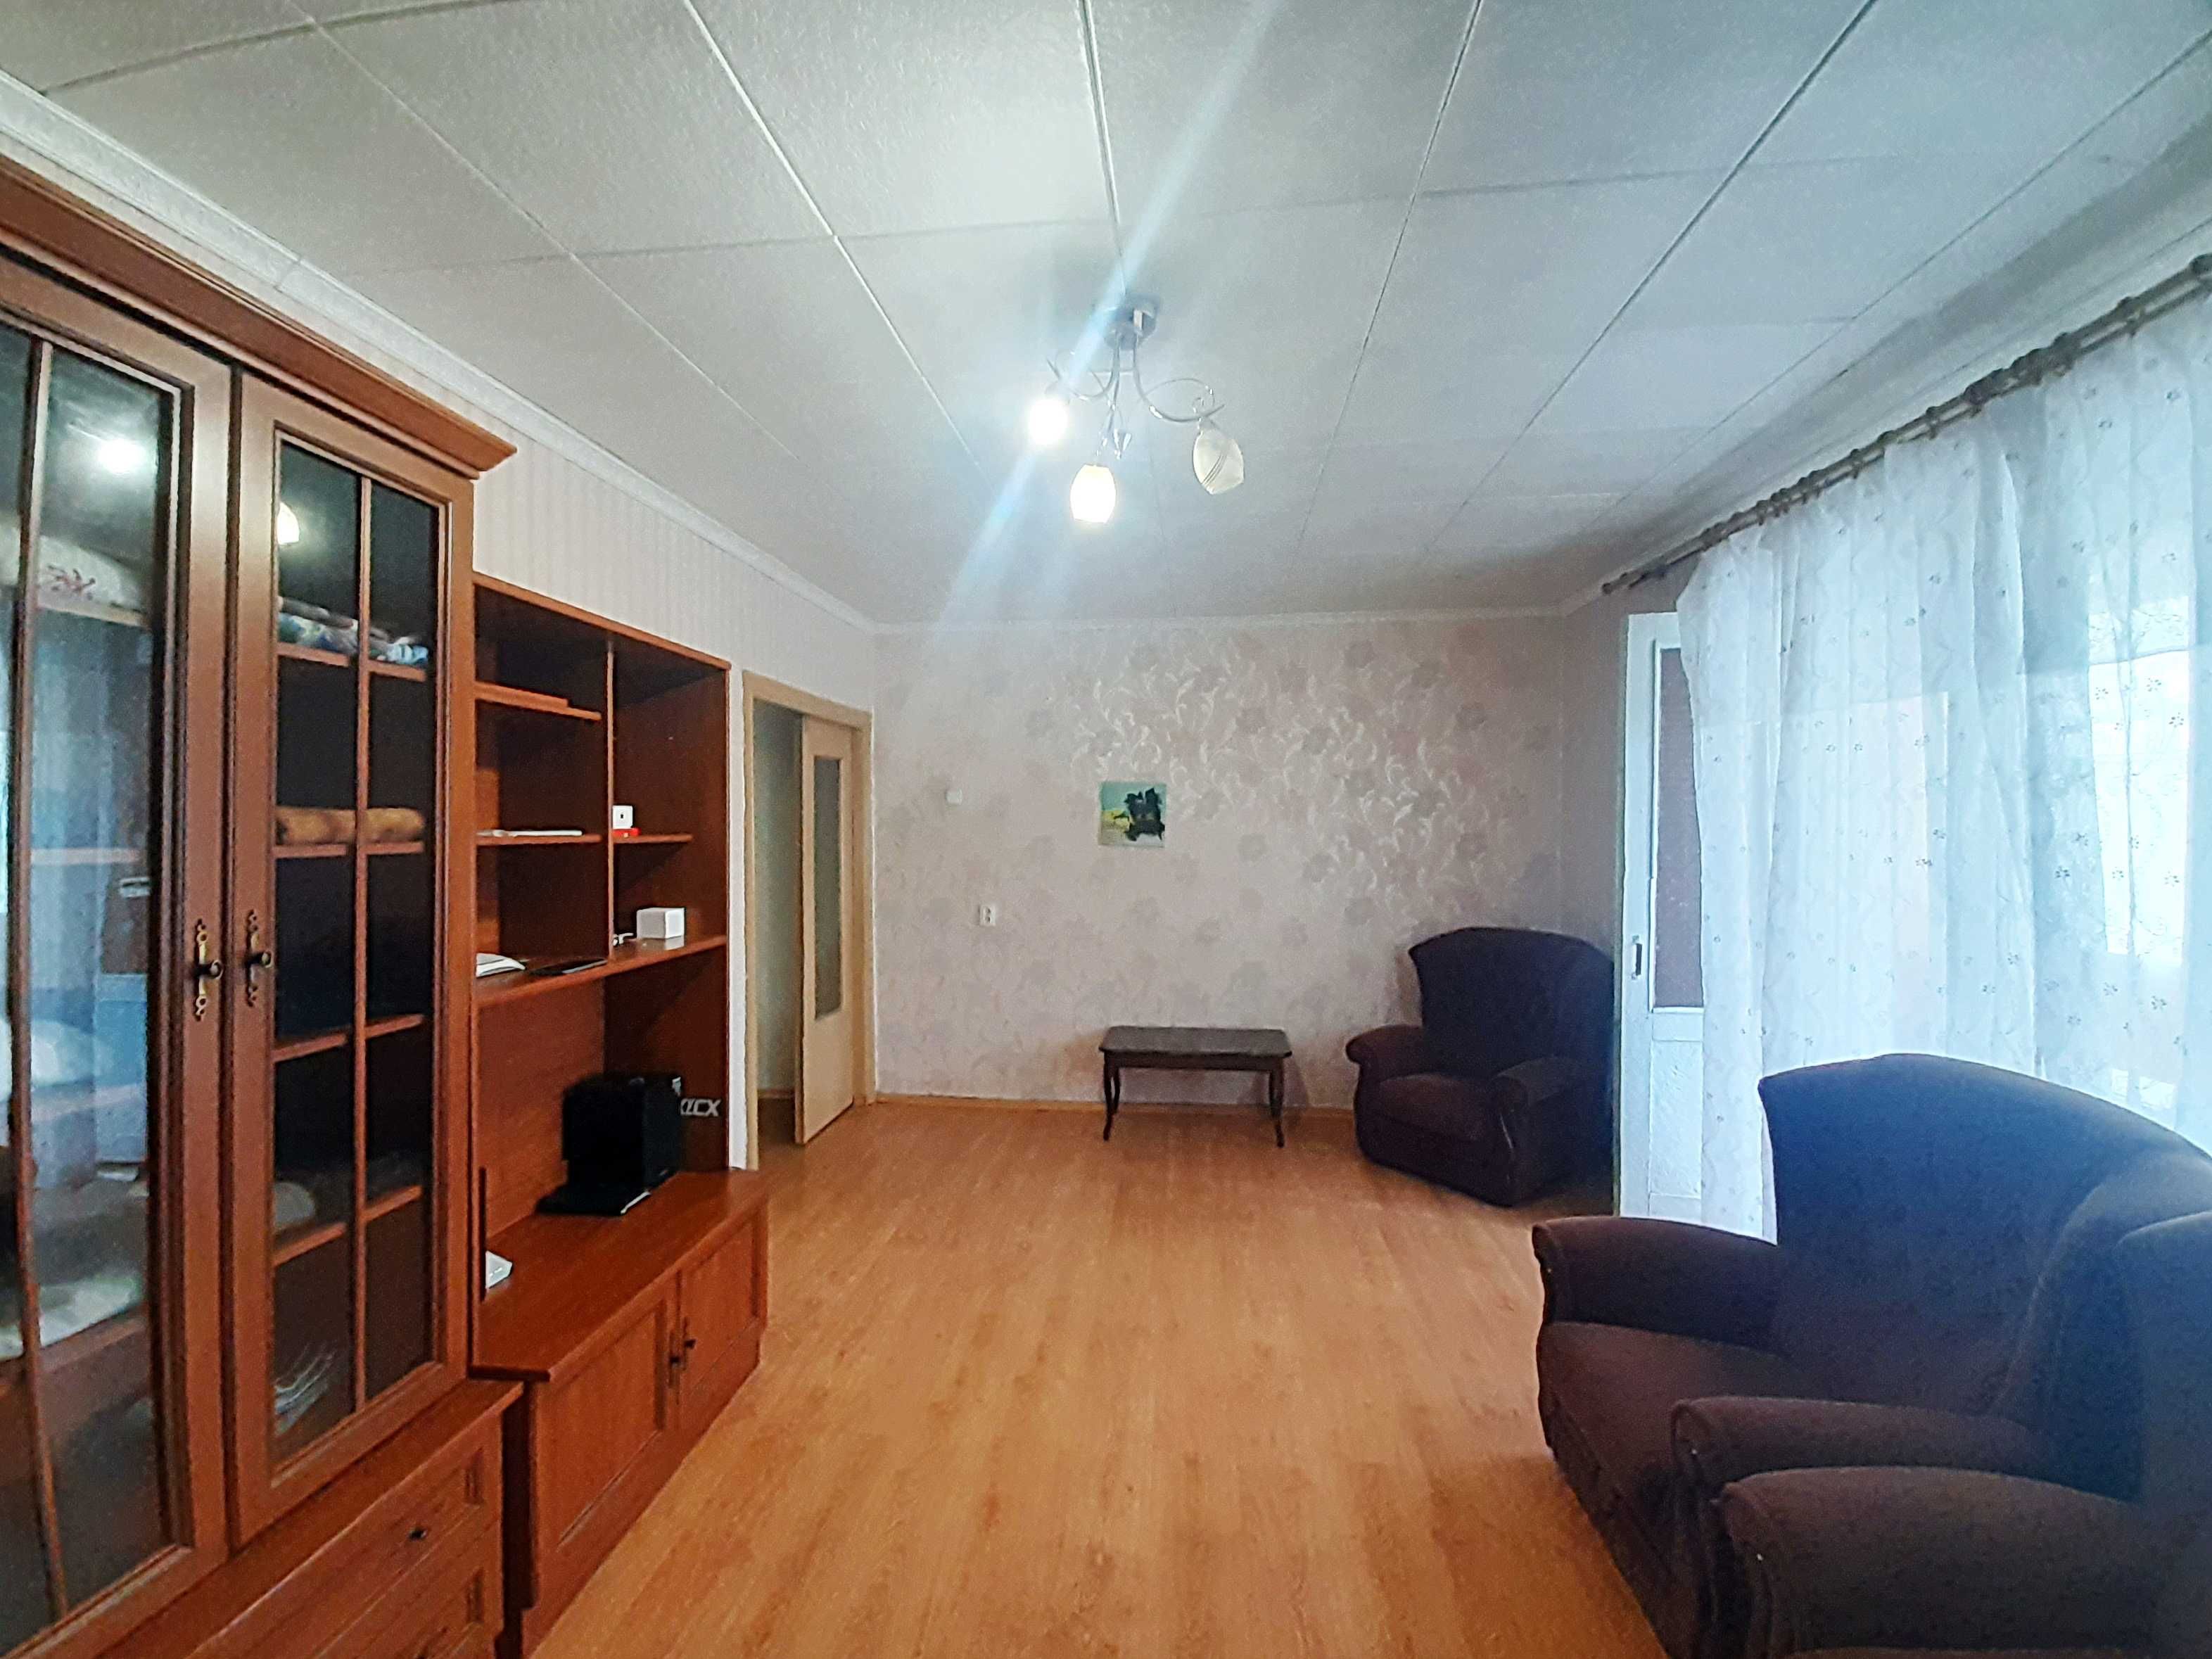 Продам квартиру в Соколівці Вільнянського району